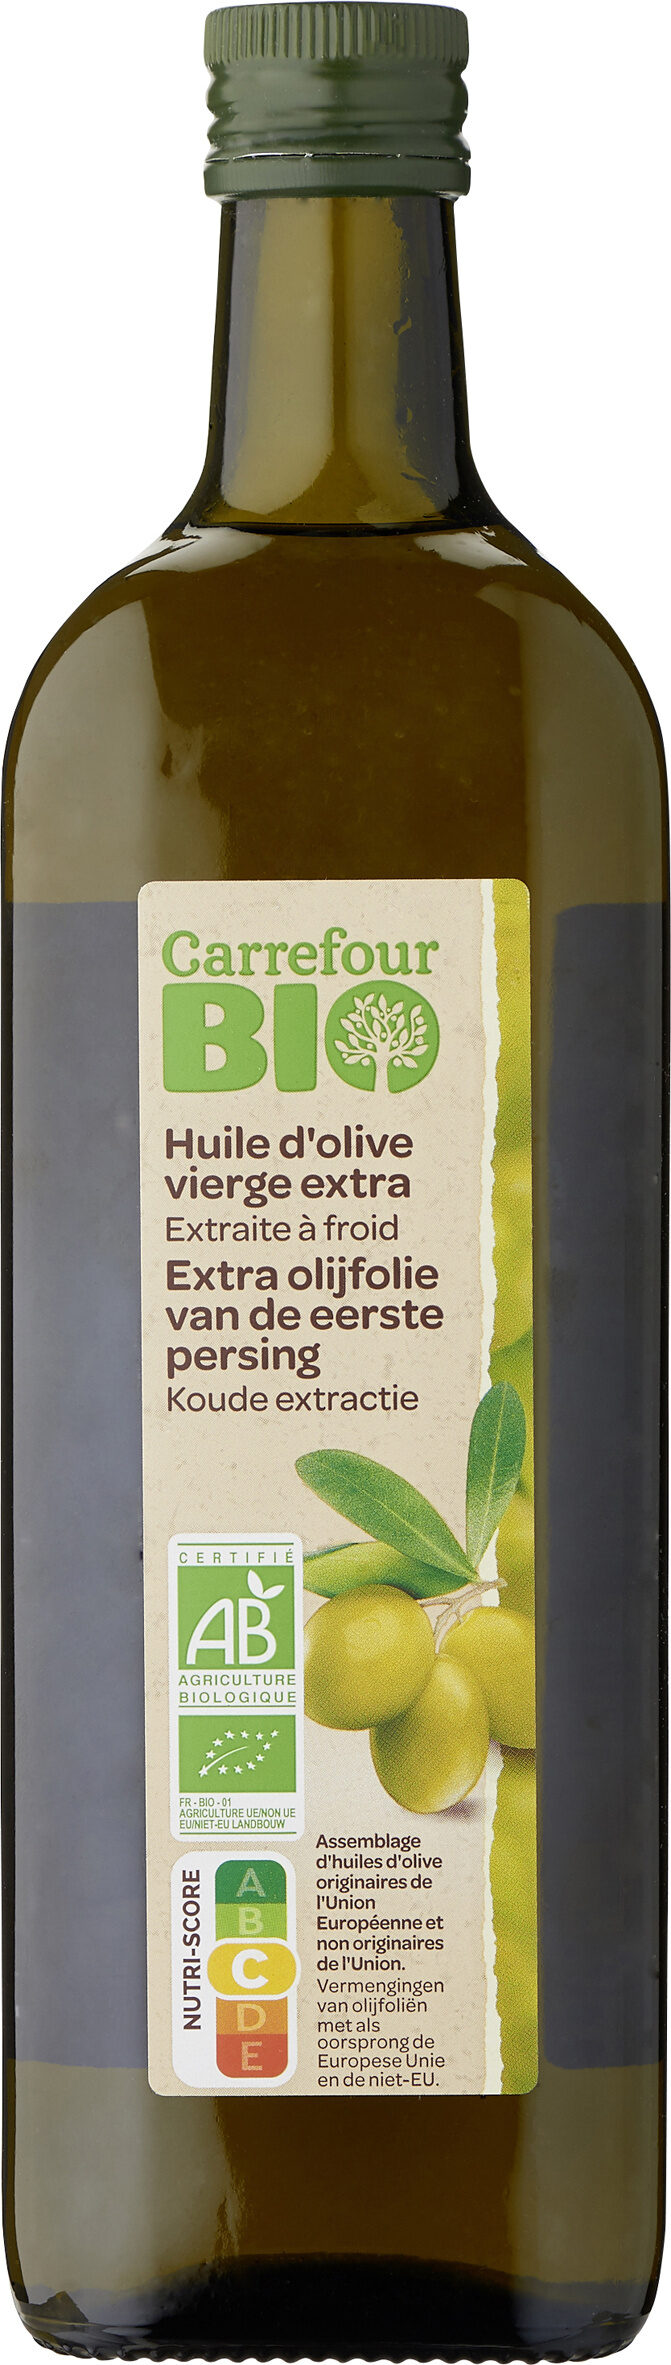 Huile d'olive vierge extra - Produkt - fr